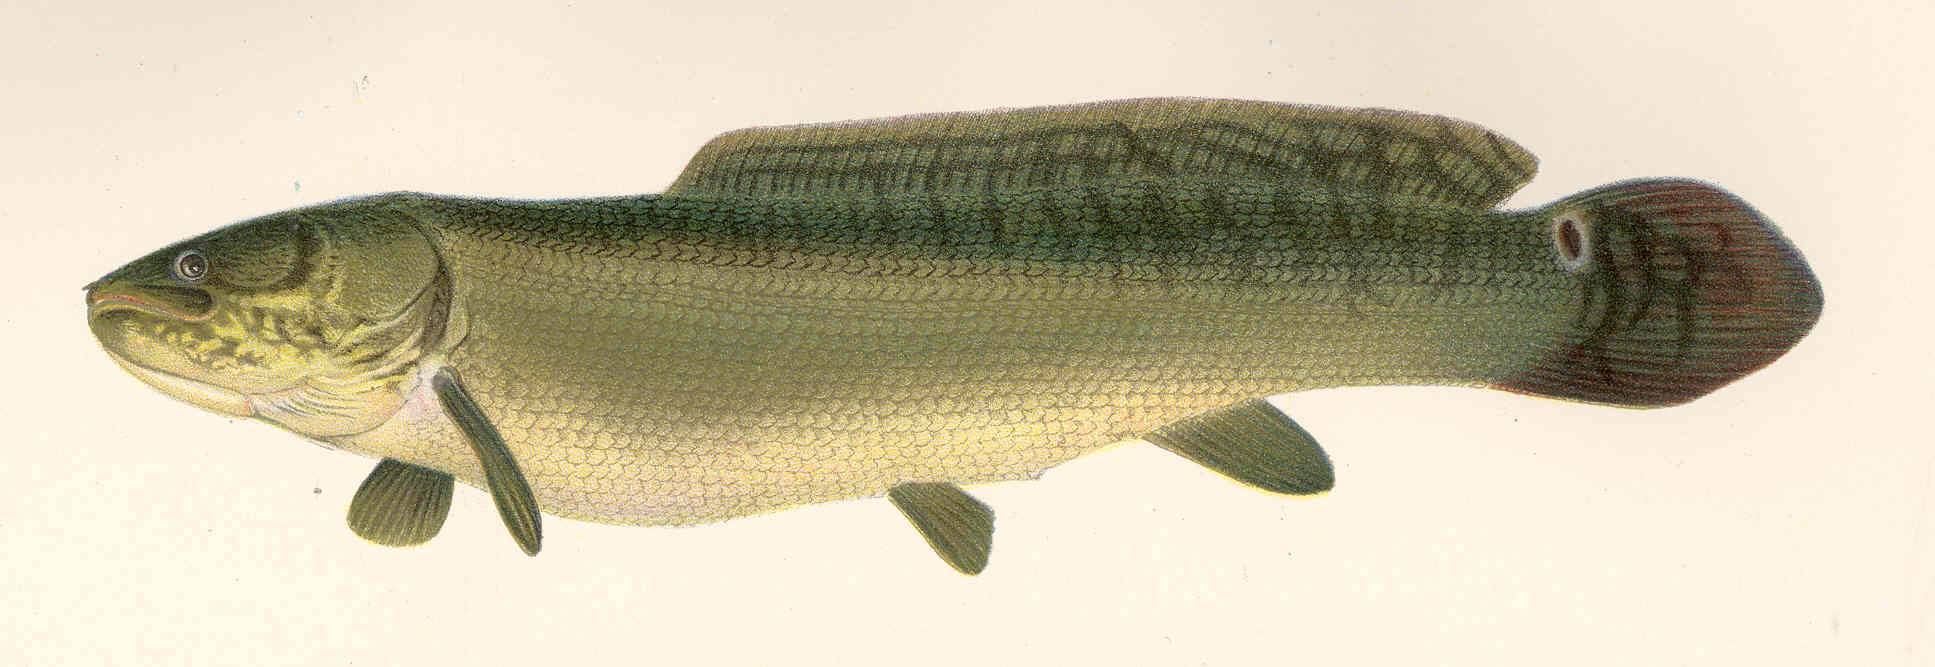 Рыба голец: фото, польза и вред, где водится, описание и разновидности